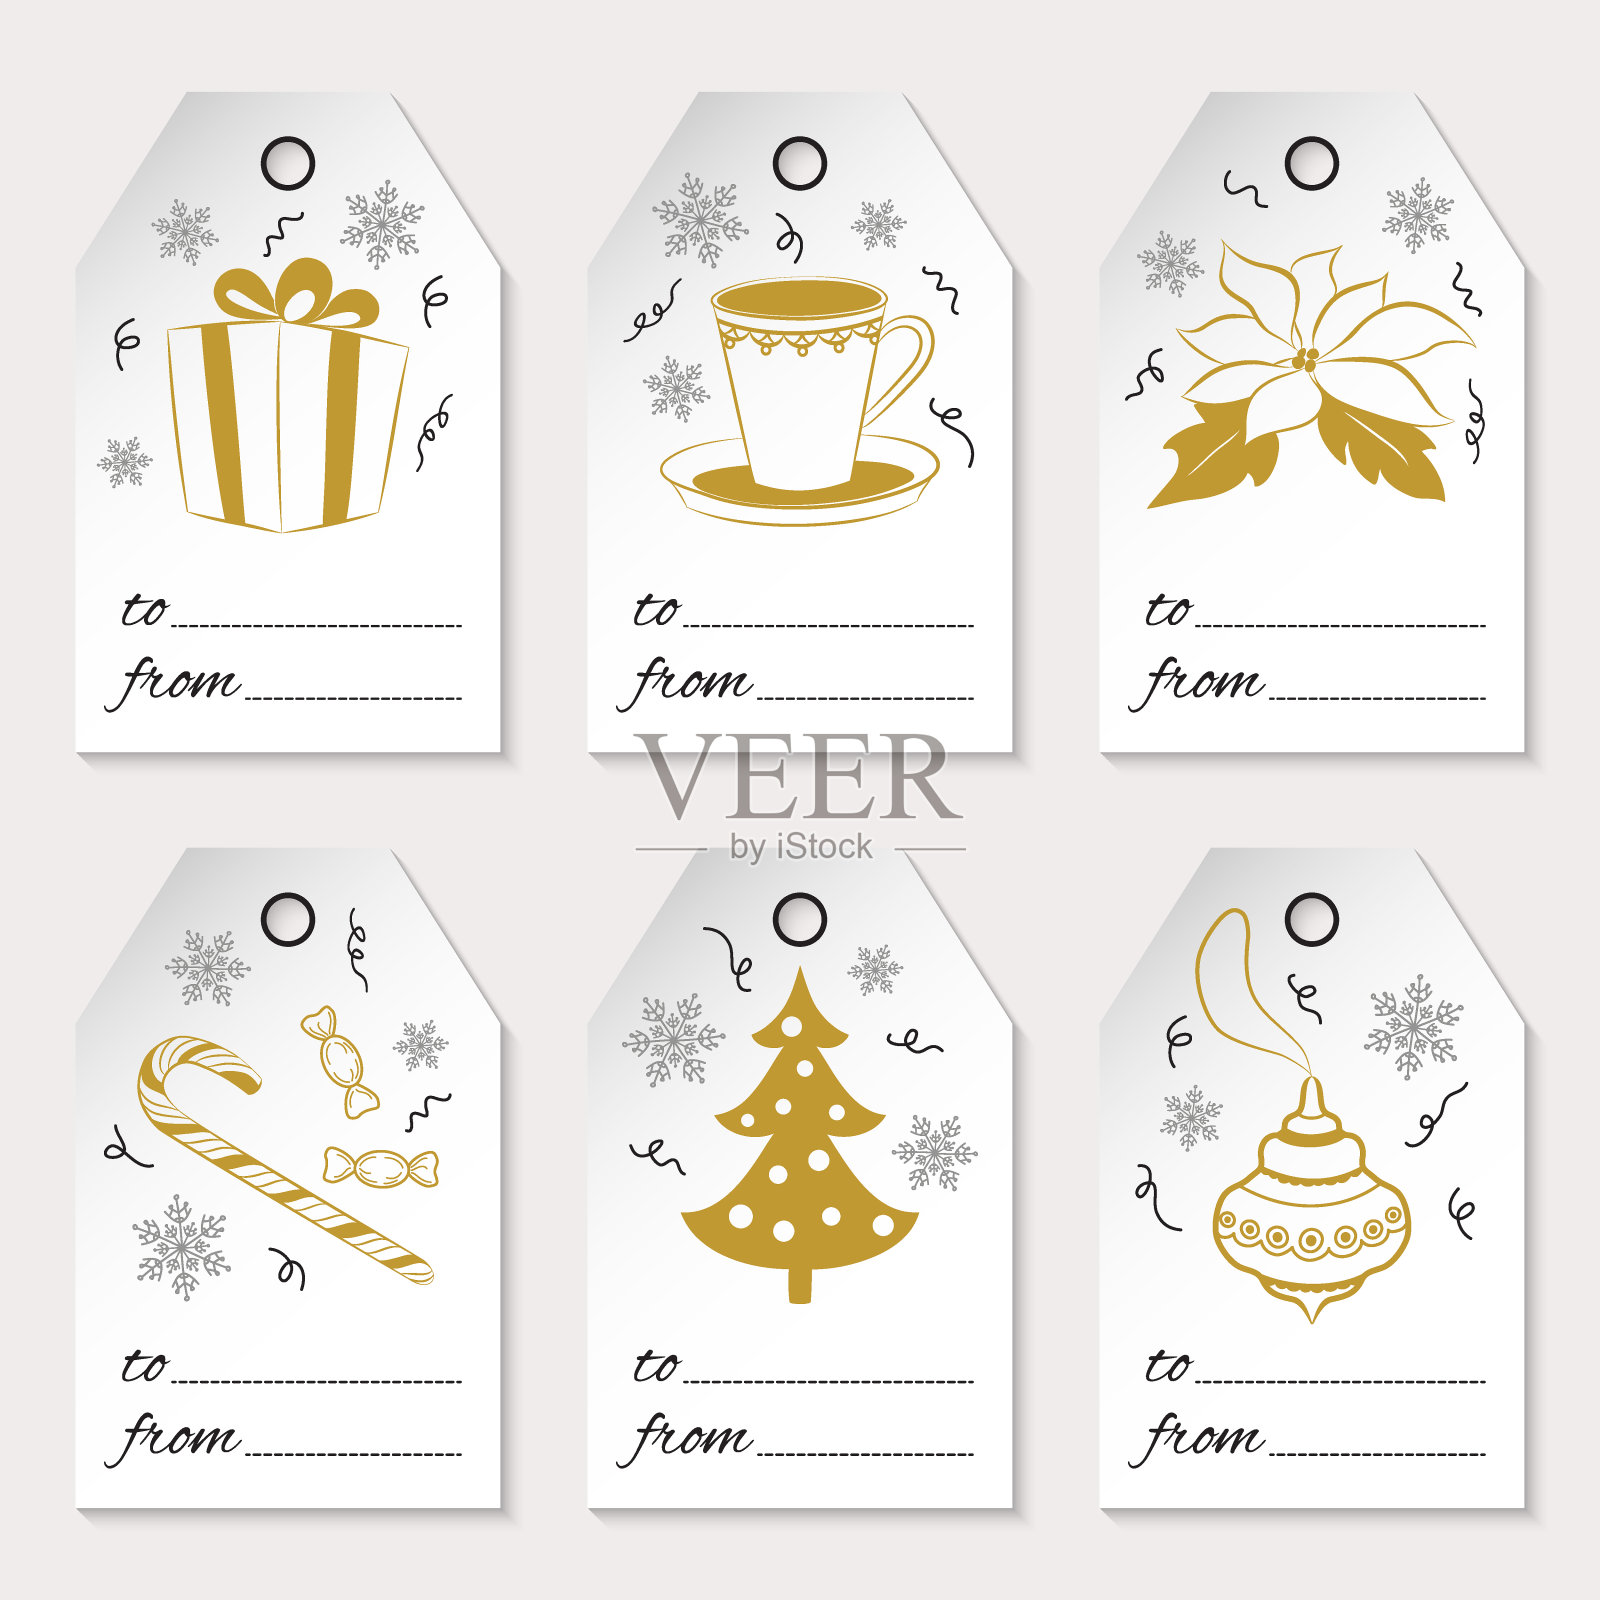 一套六个圣诞或新年礼物标签与节日的图标和冬天的象征。金色元素孤立在白色背景上。用于你的设计，剪贴簿，包装，销售。向量图标素材